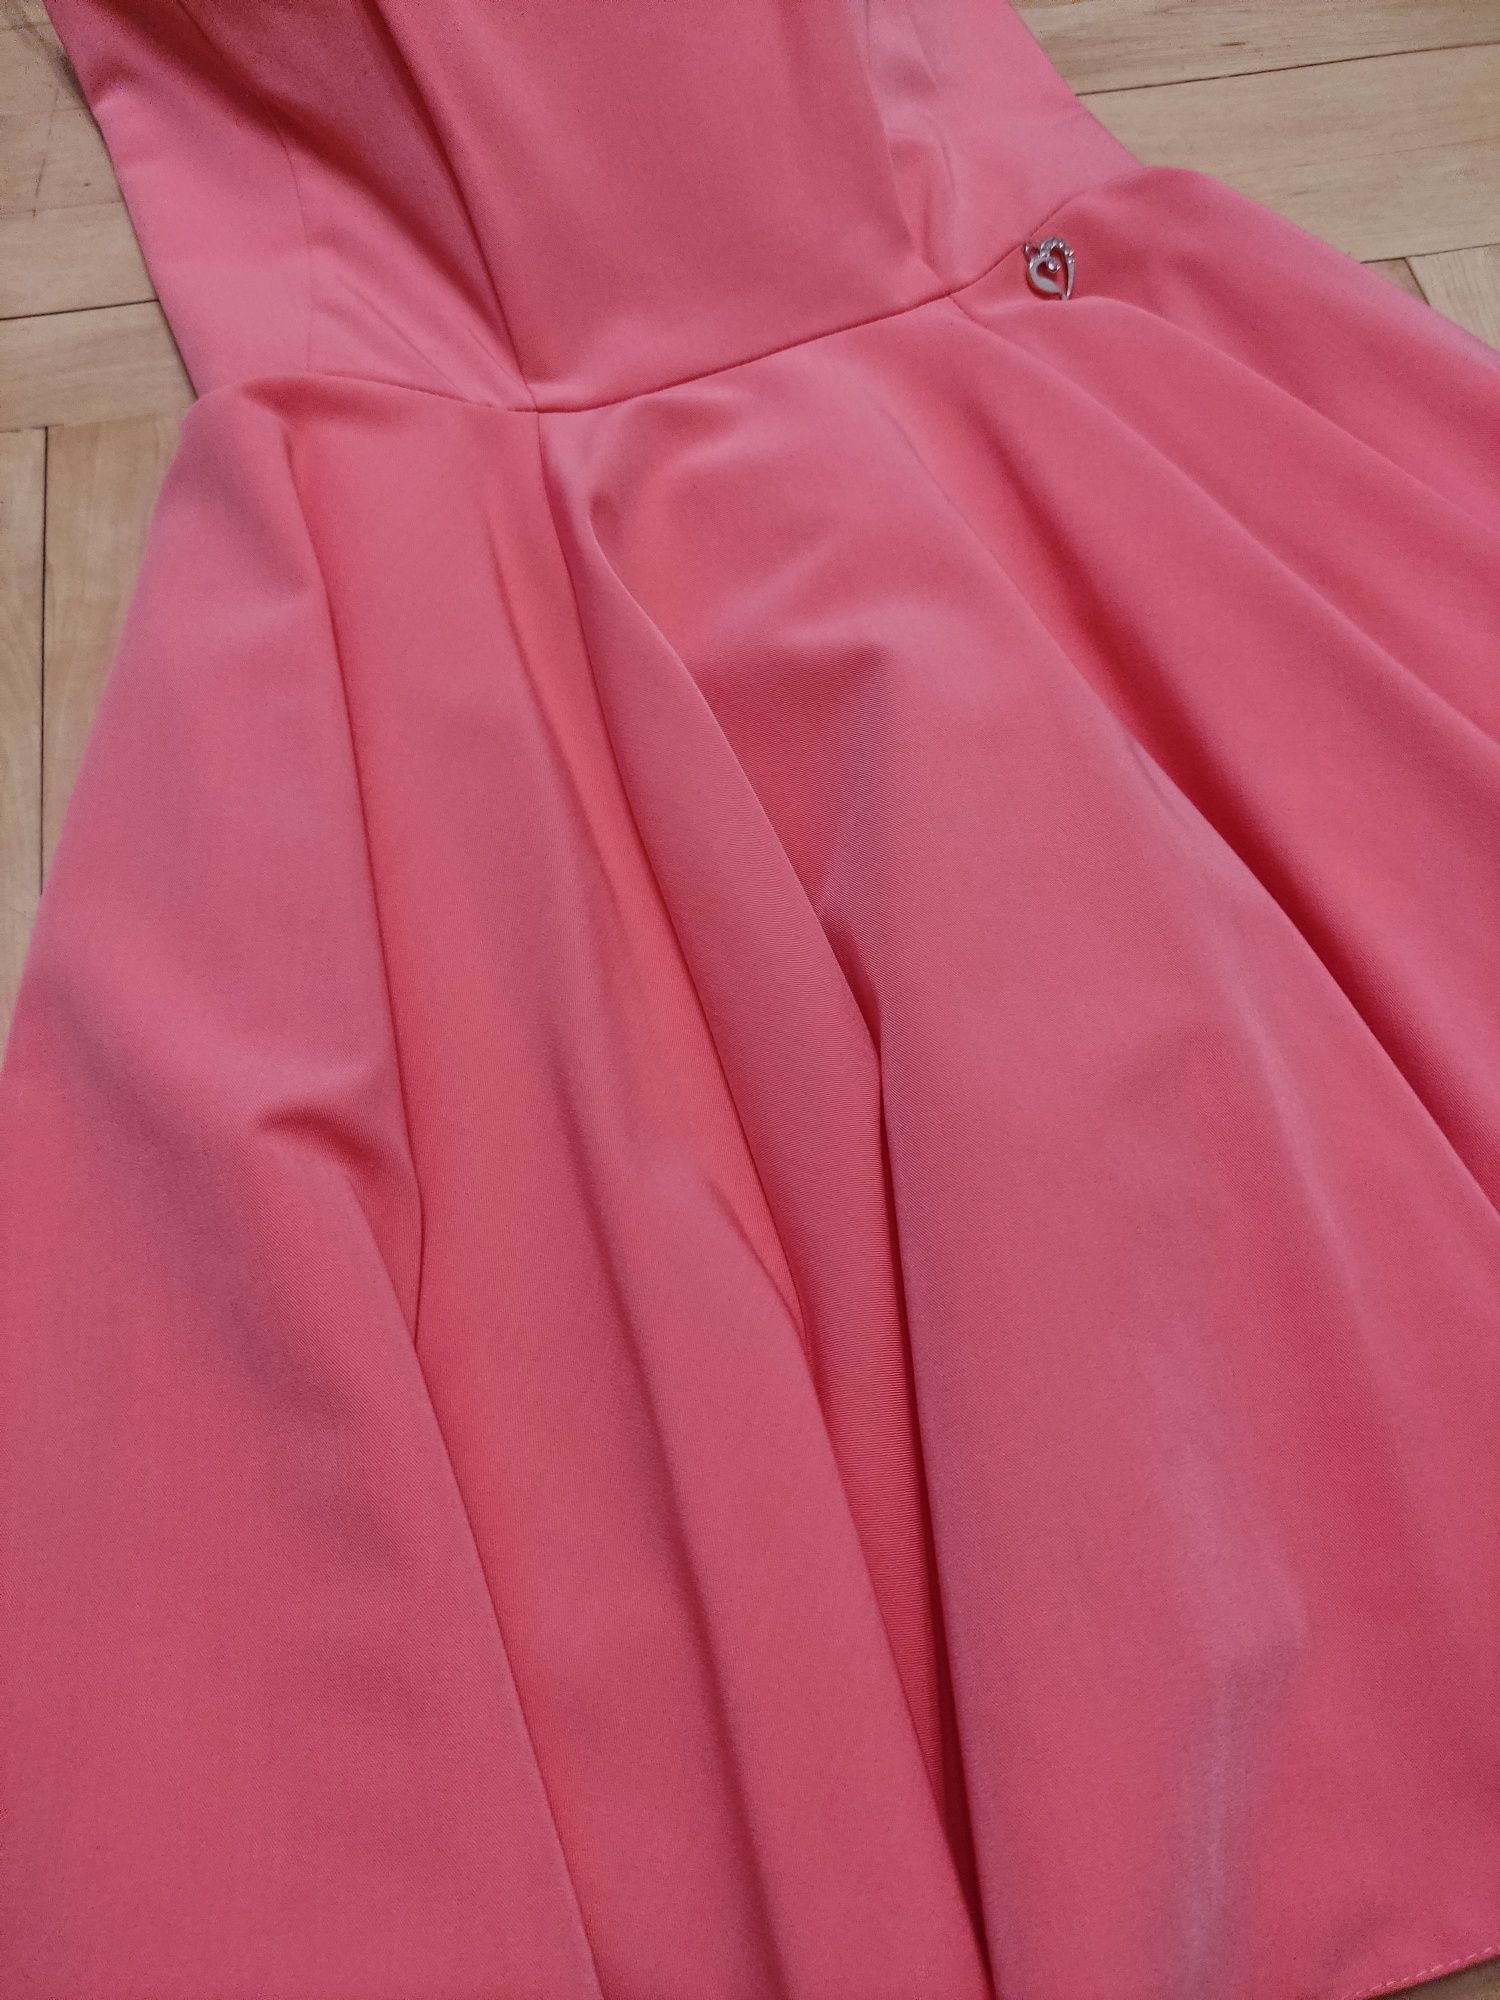 Sukienka gorsetowa różowa koralowa bez ramiączek rozkloszowana